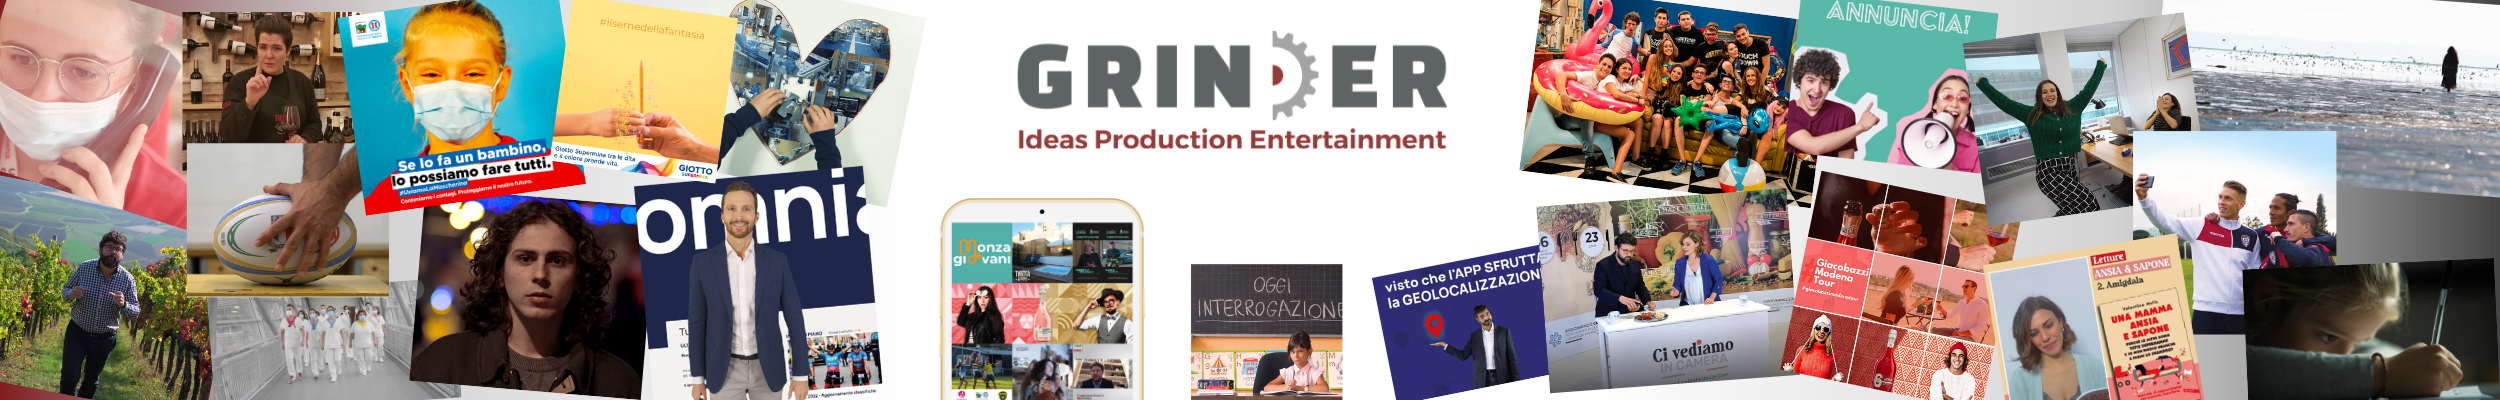 Logo GRINDER Ideas Production Entertainment